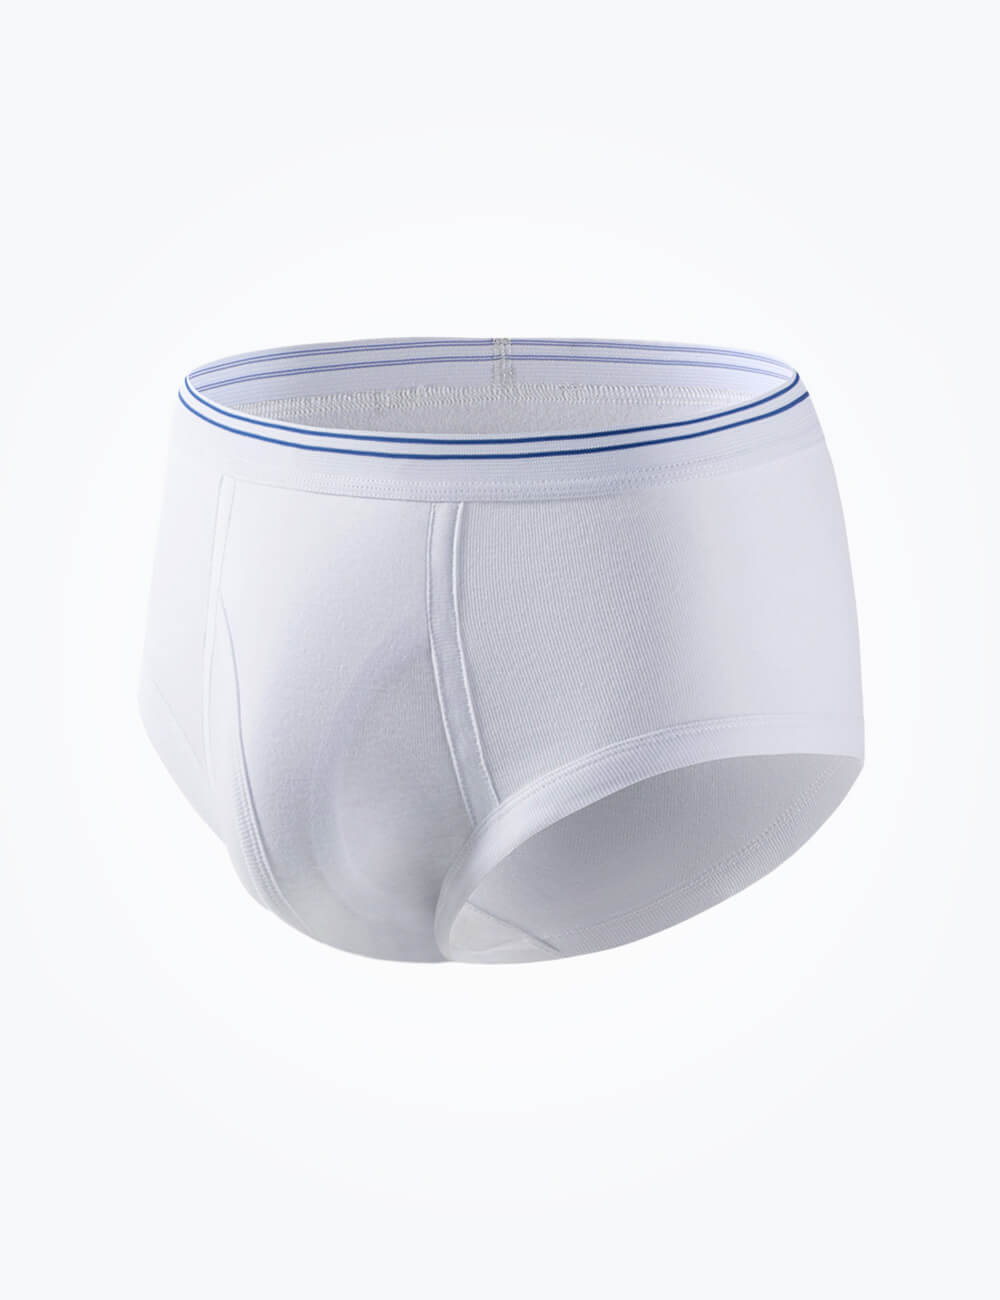  Waterproof Incontinence Underwear for Women Men